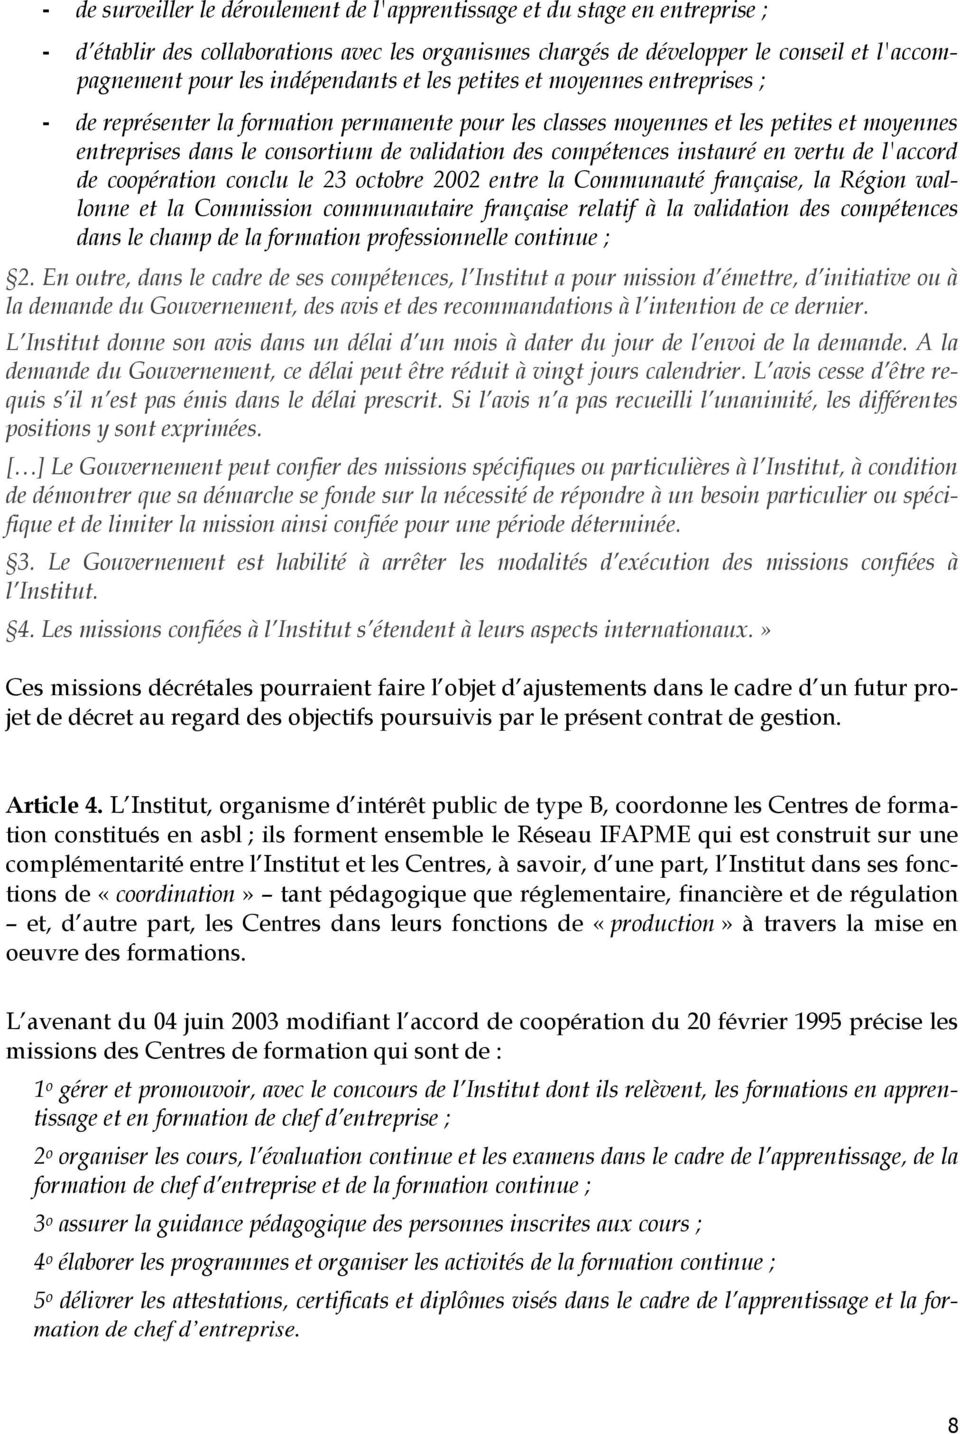 compétences instauré en vertu de l'accord de coopération conclu le 23 octobre 2002 entre la Communauté française, la Région wallonne et la Commission communautaire française relatif à la validation